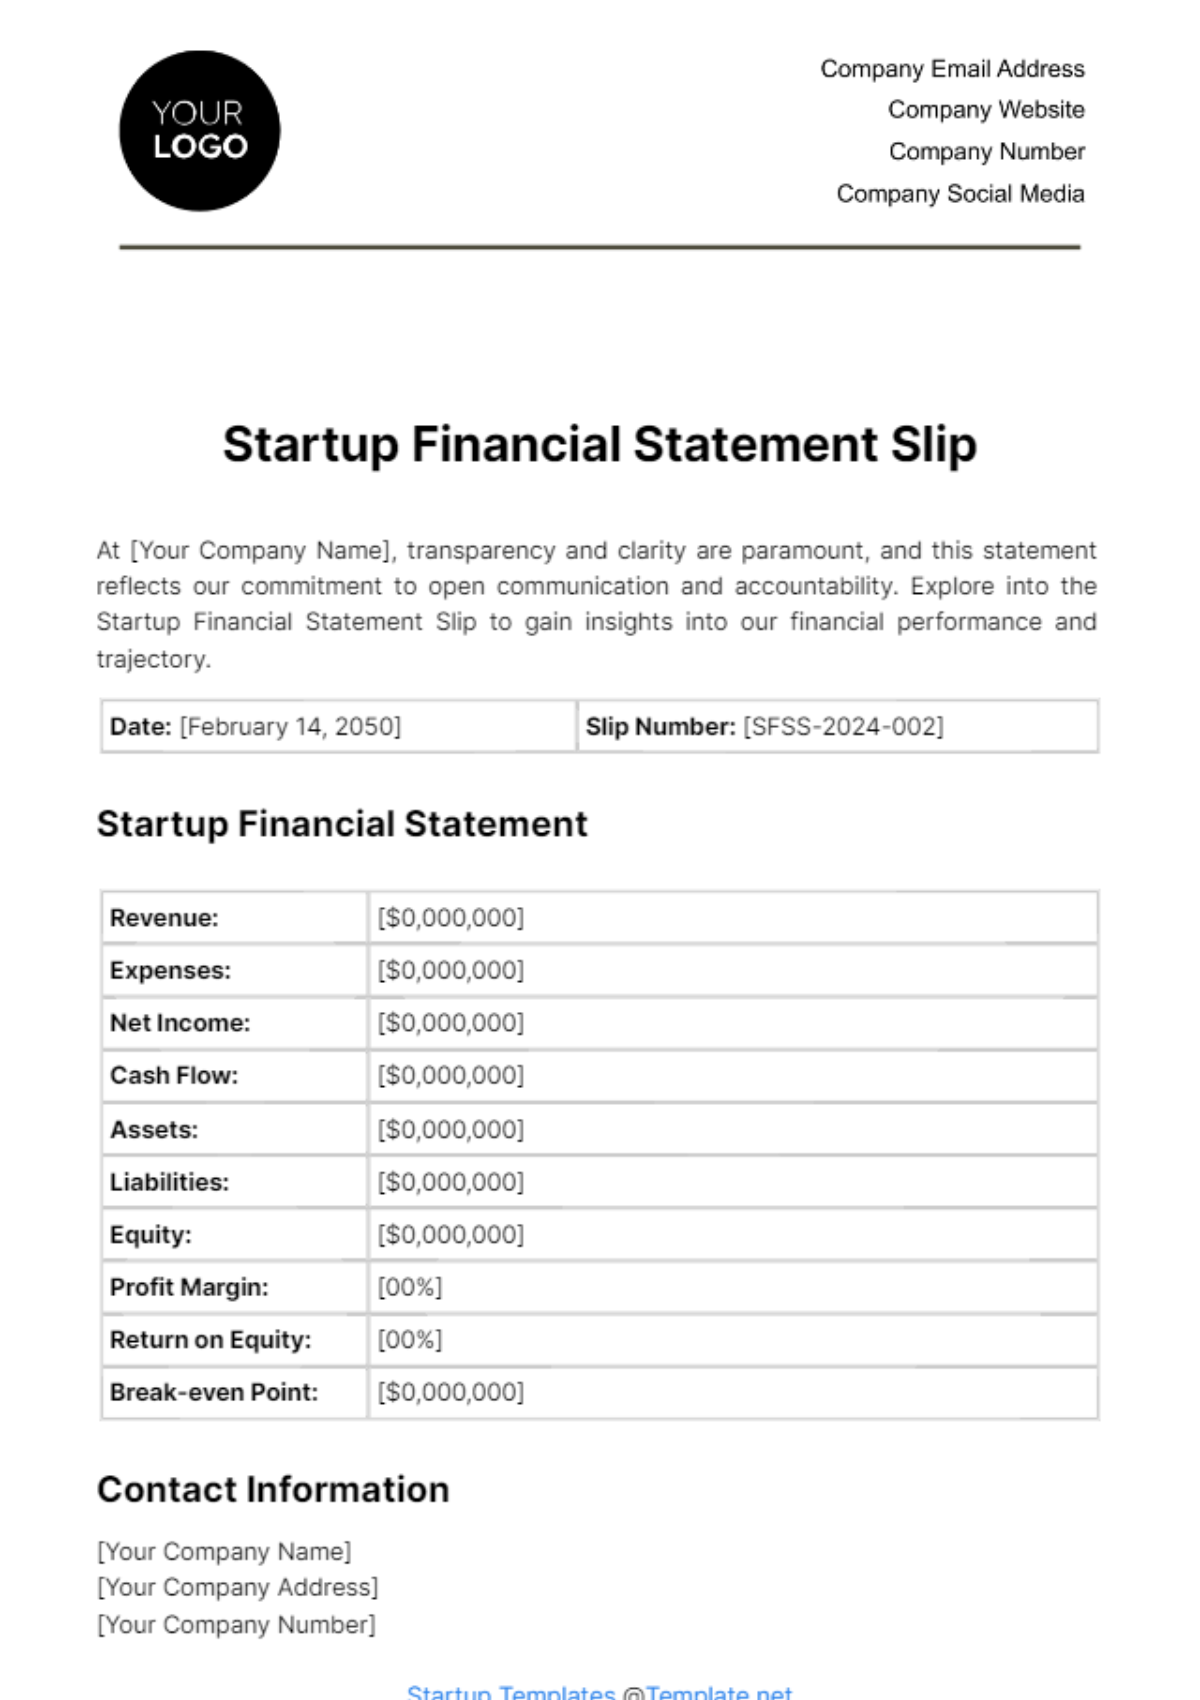 Startup Financial Statement Slip Template